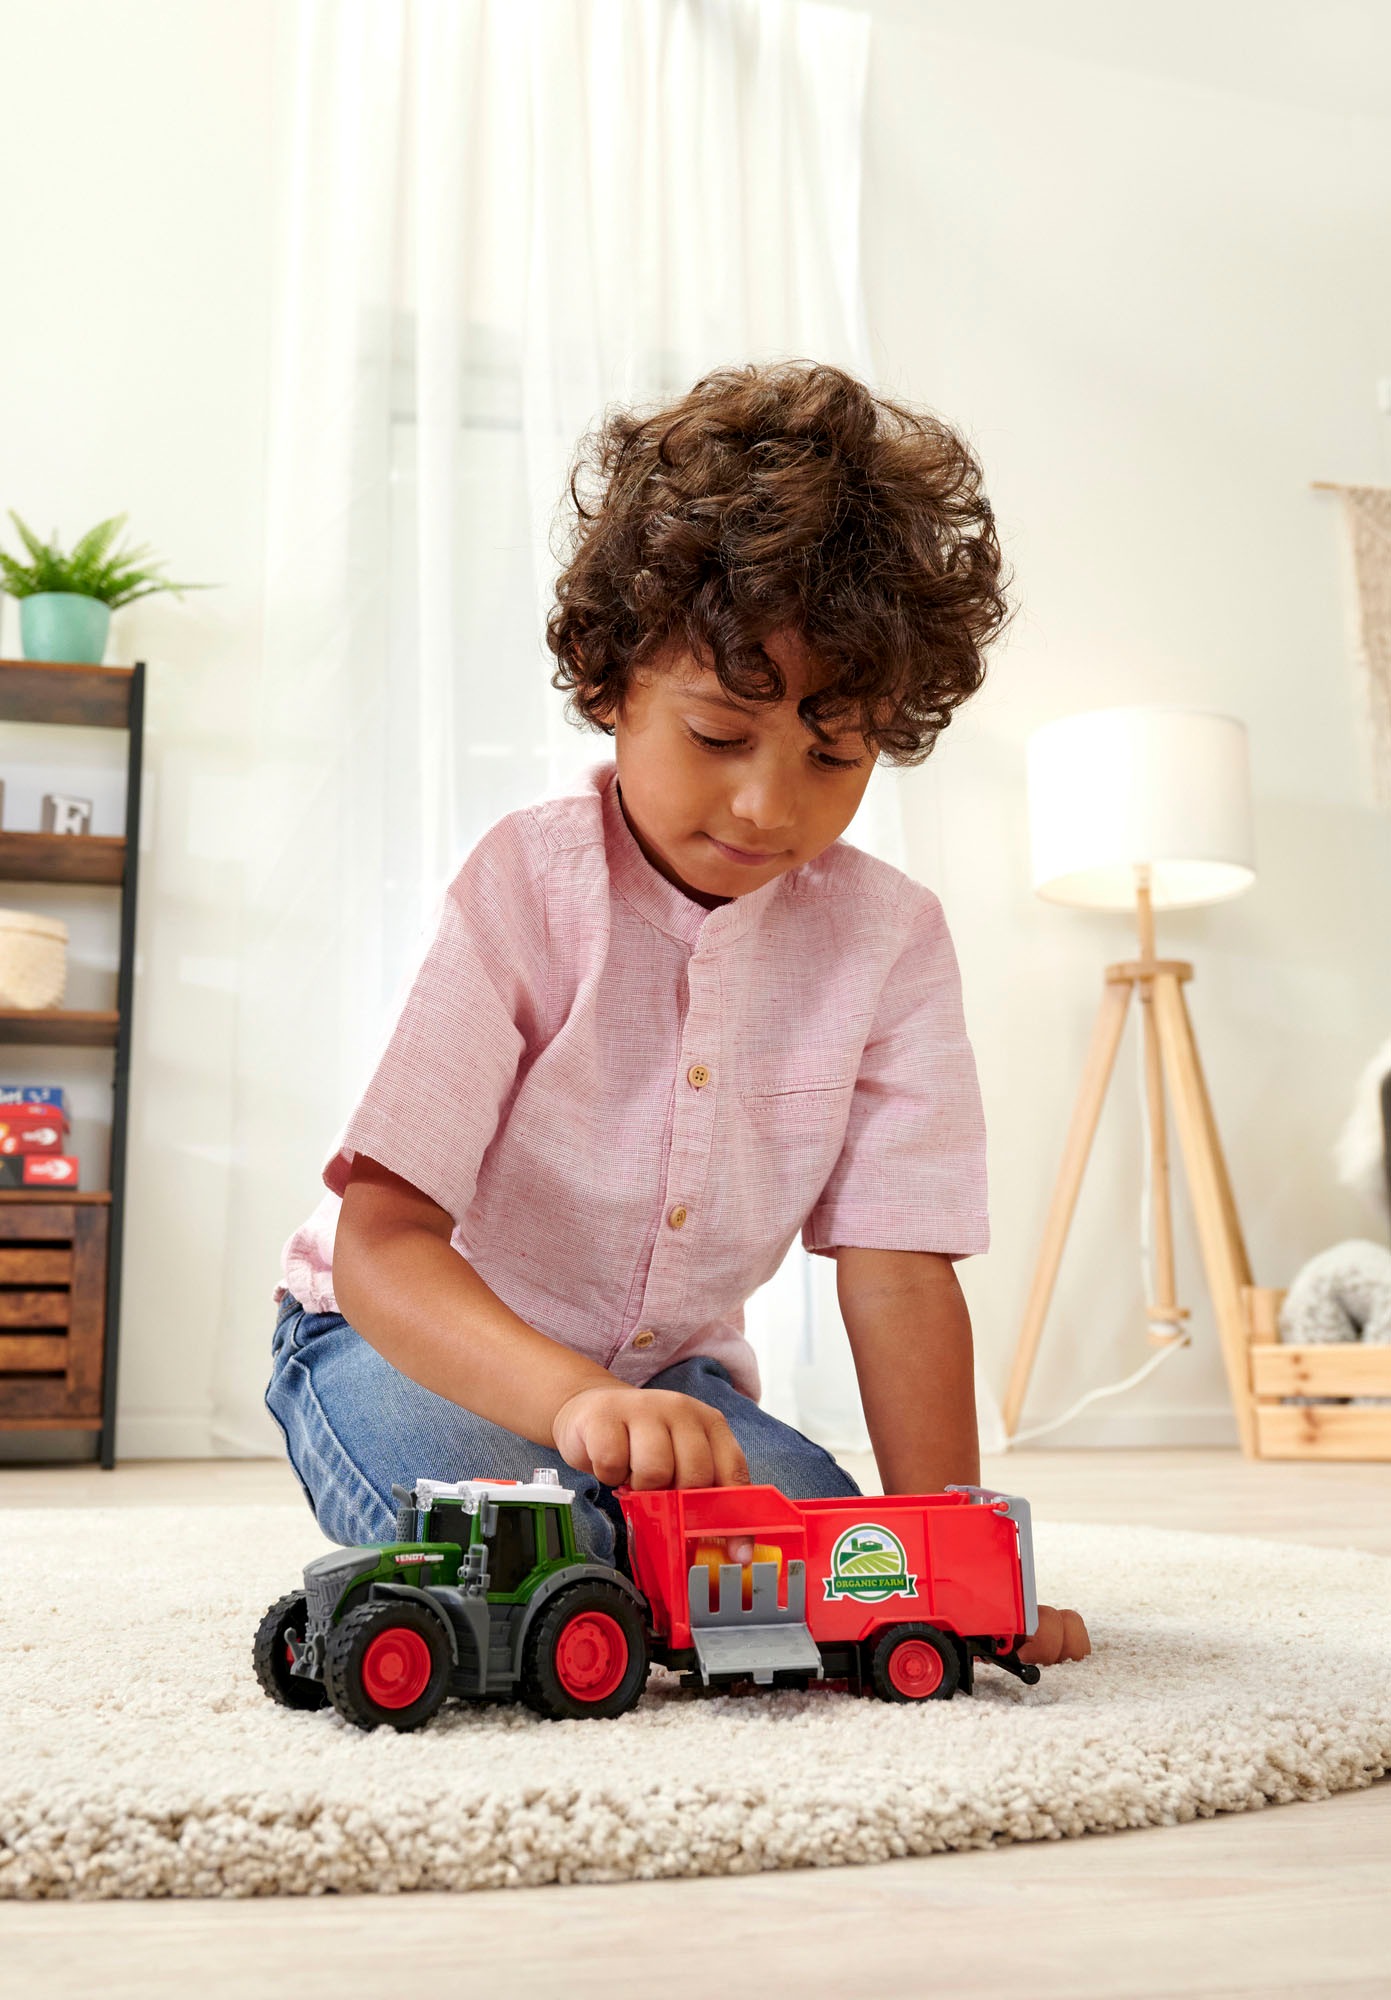 Dickie Toys Spielzeug-Traktor »Fendt Farm Trailer«, mit Licht und Sound